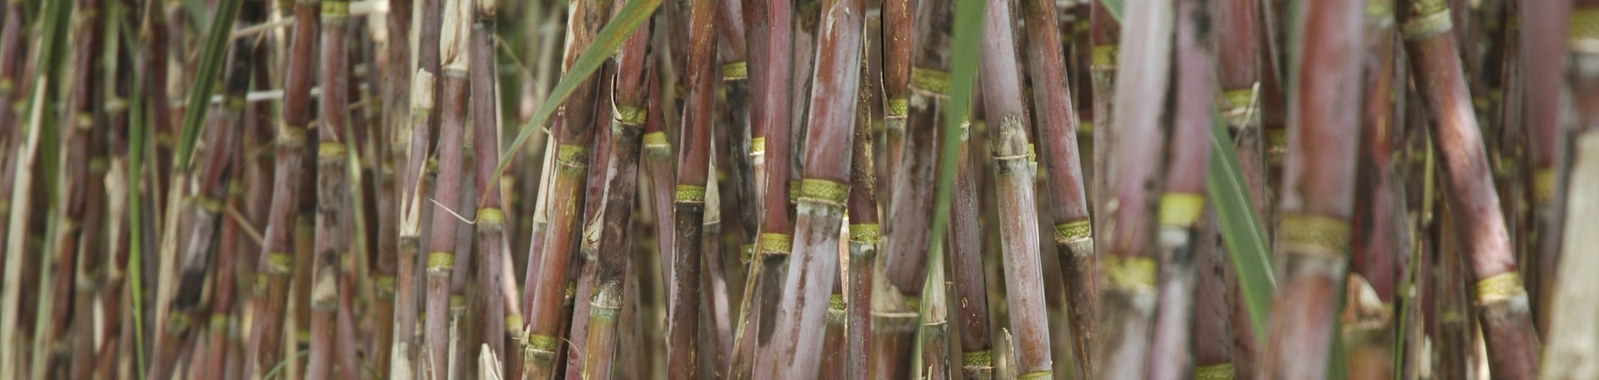 Prevenir bandas cloróticas en hojas de caña de azúcar y nutrición vegetal 